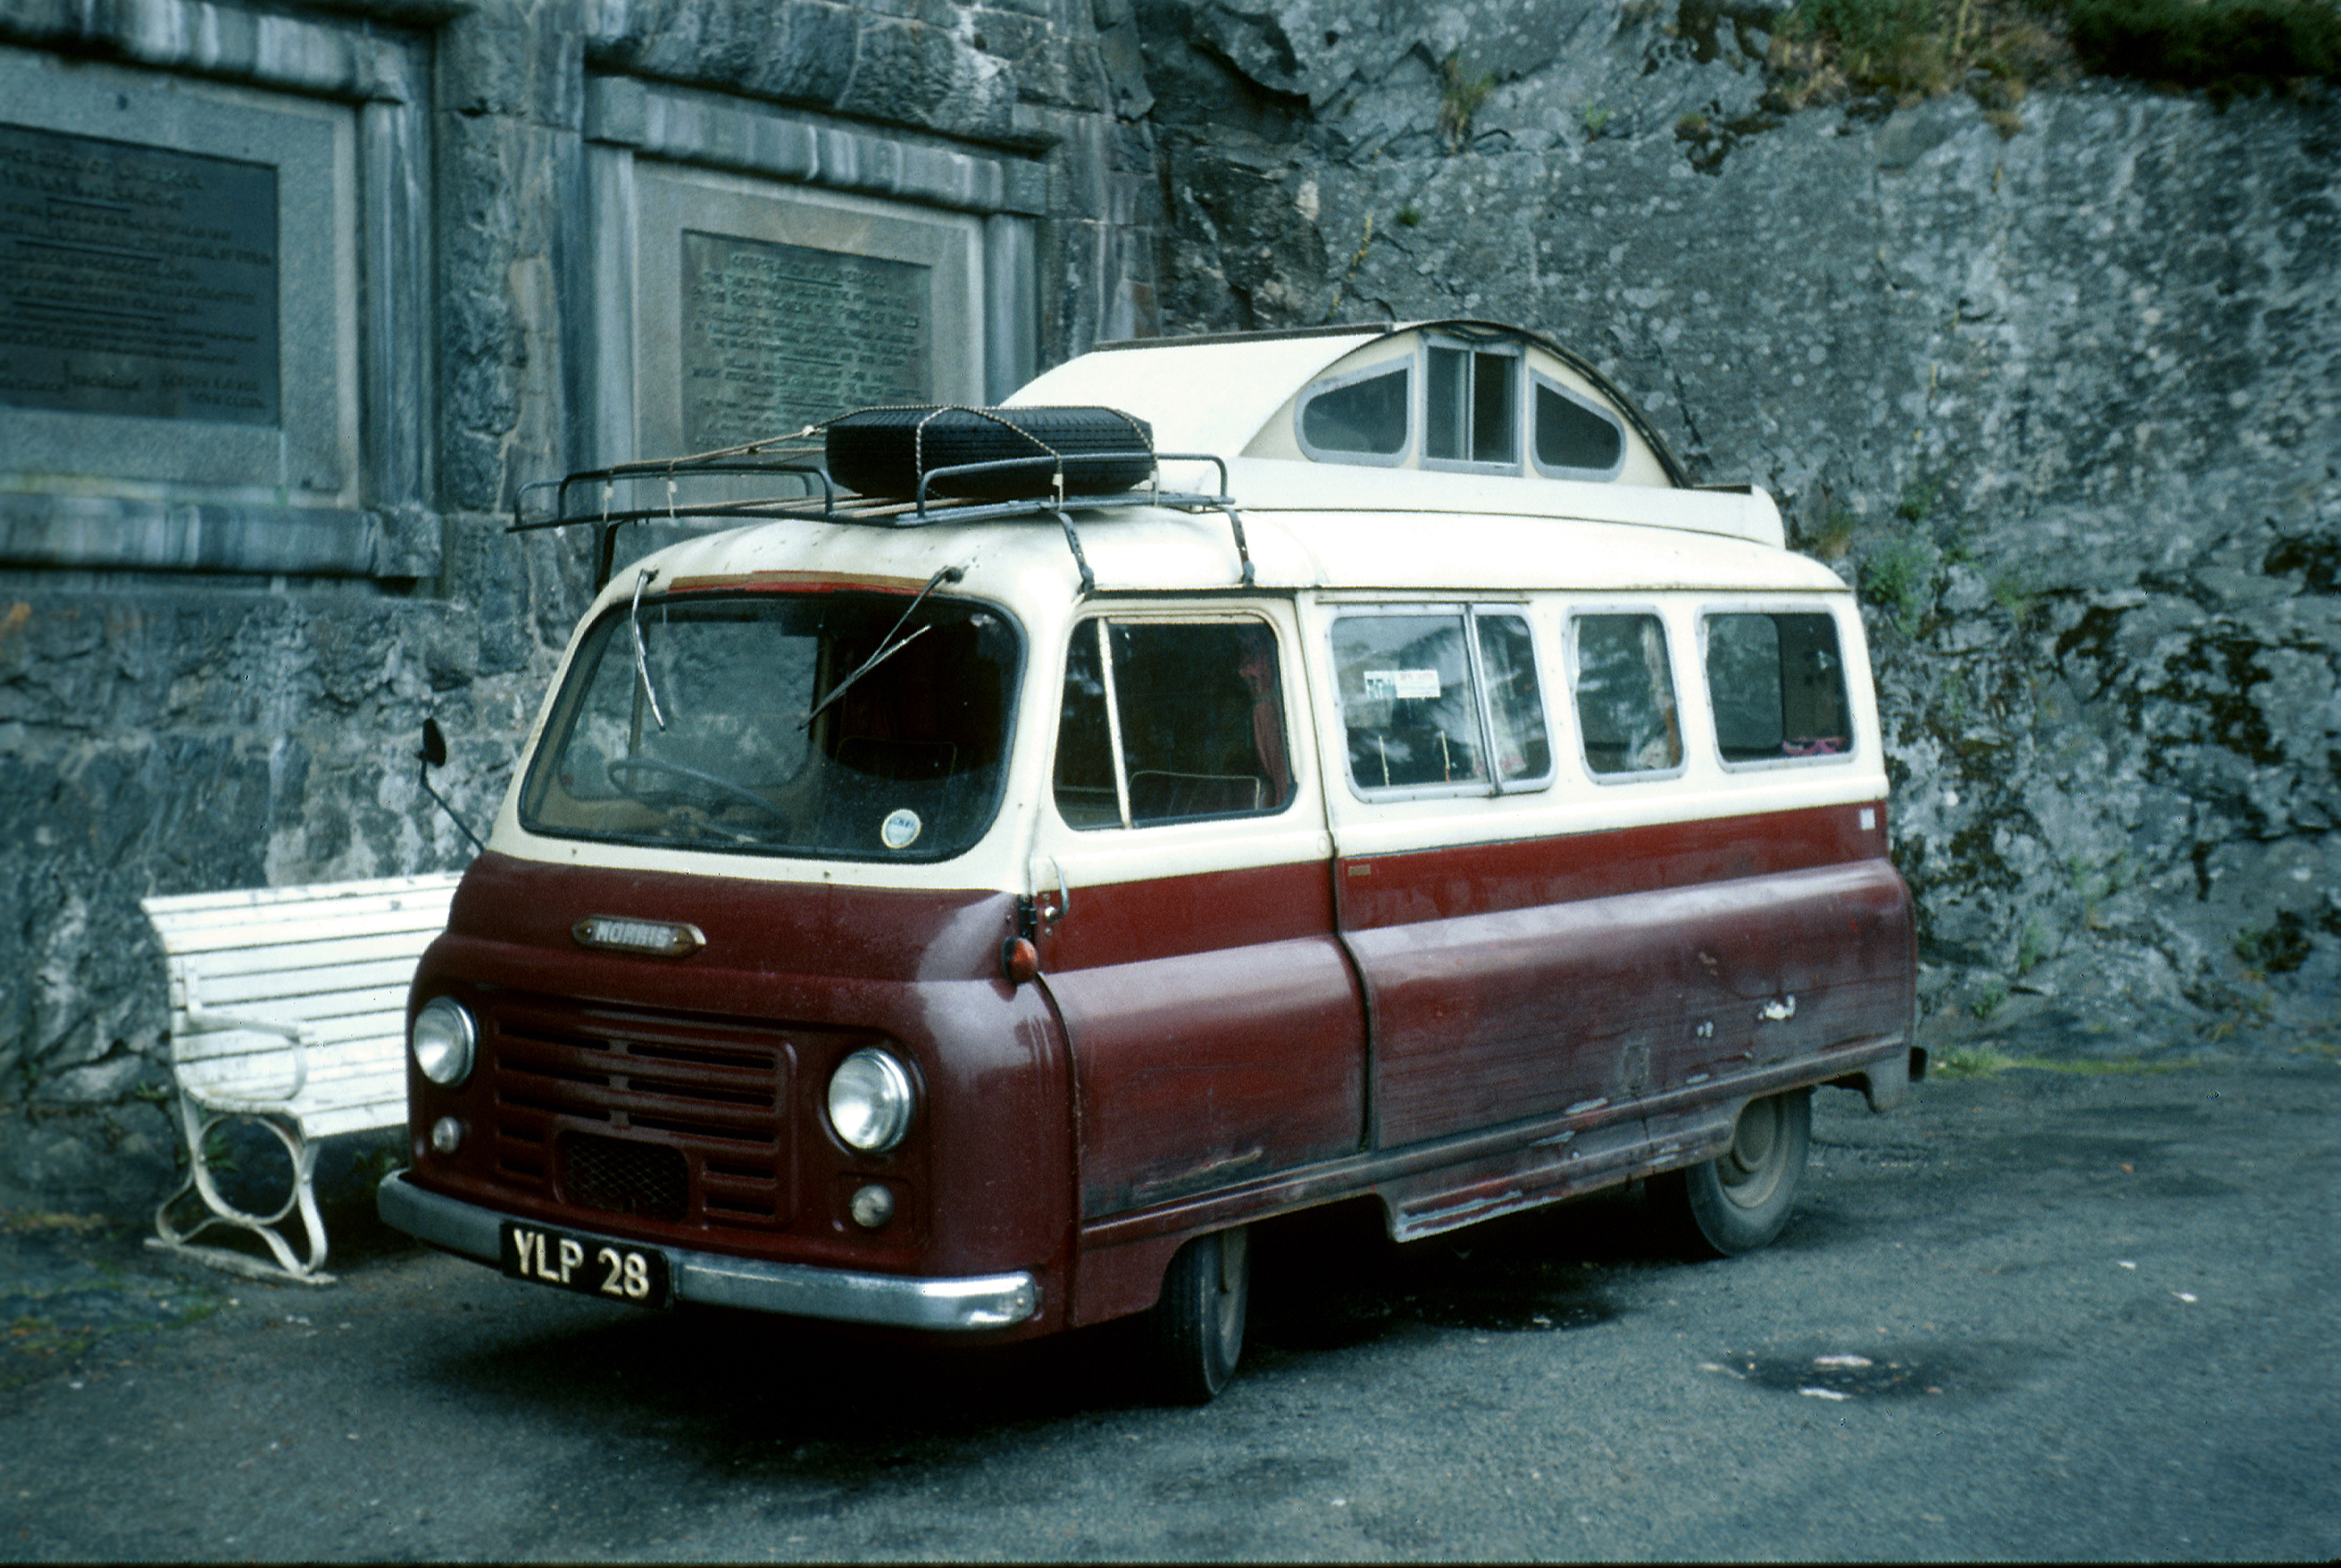 Morris J2 van with Calthorpe Home Cruiser camper van conversion. - Image 10